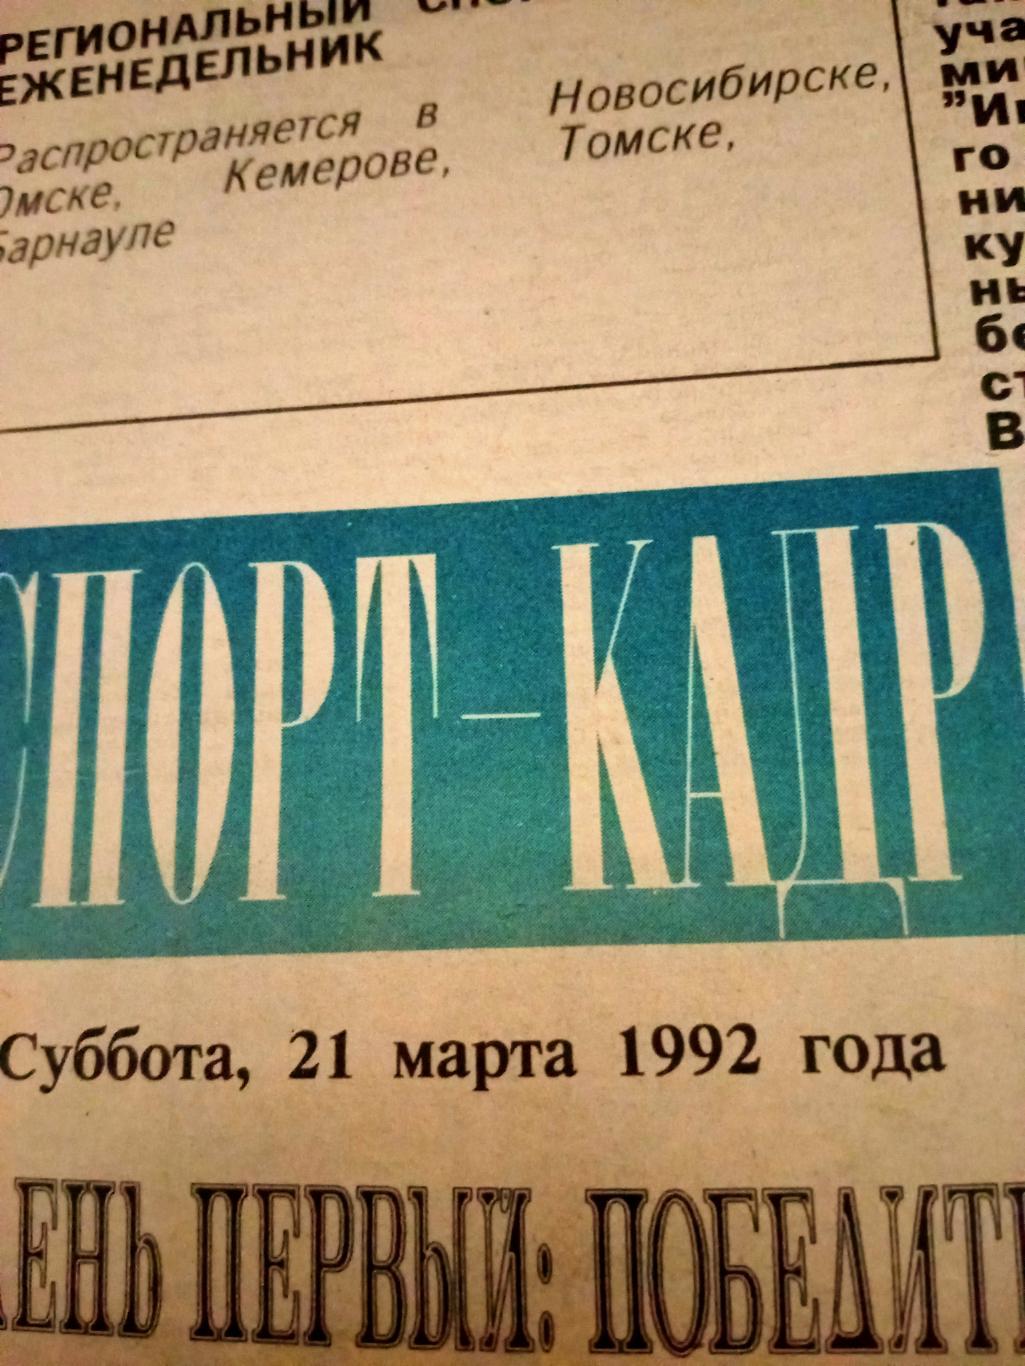 Региональный спортивный еженедельник. Спорт-Кадр. 1992 год, № 9.